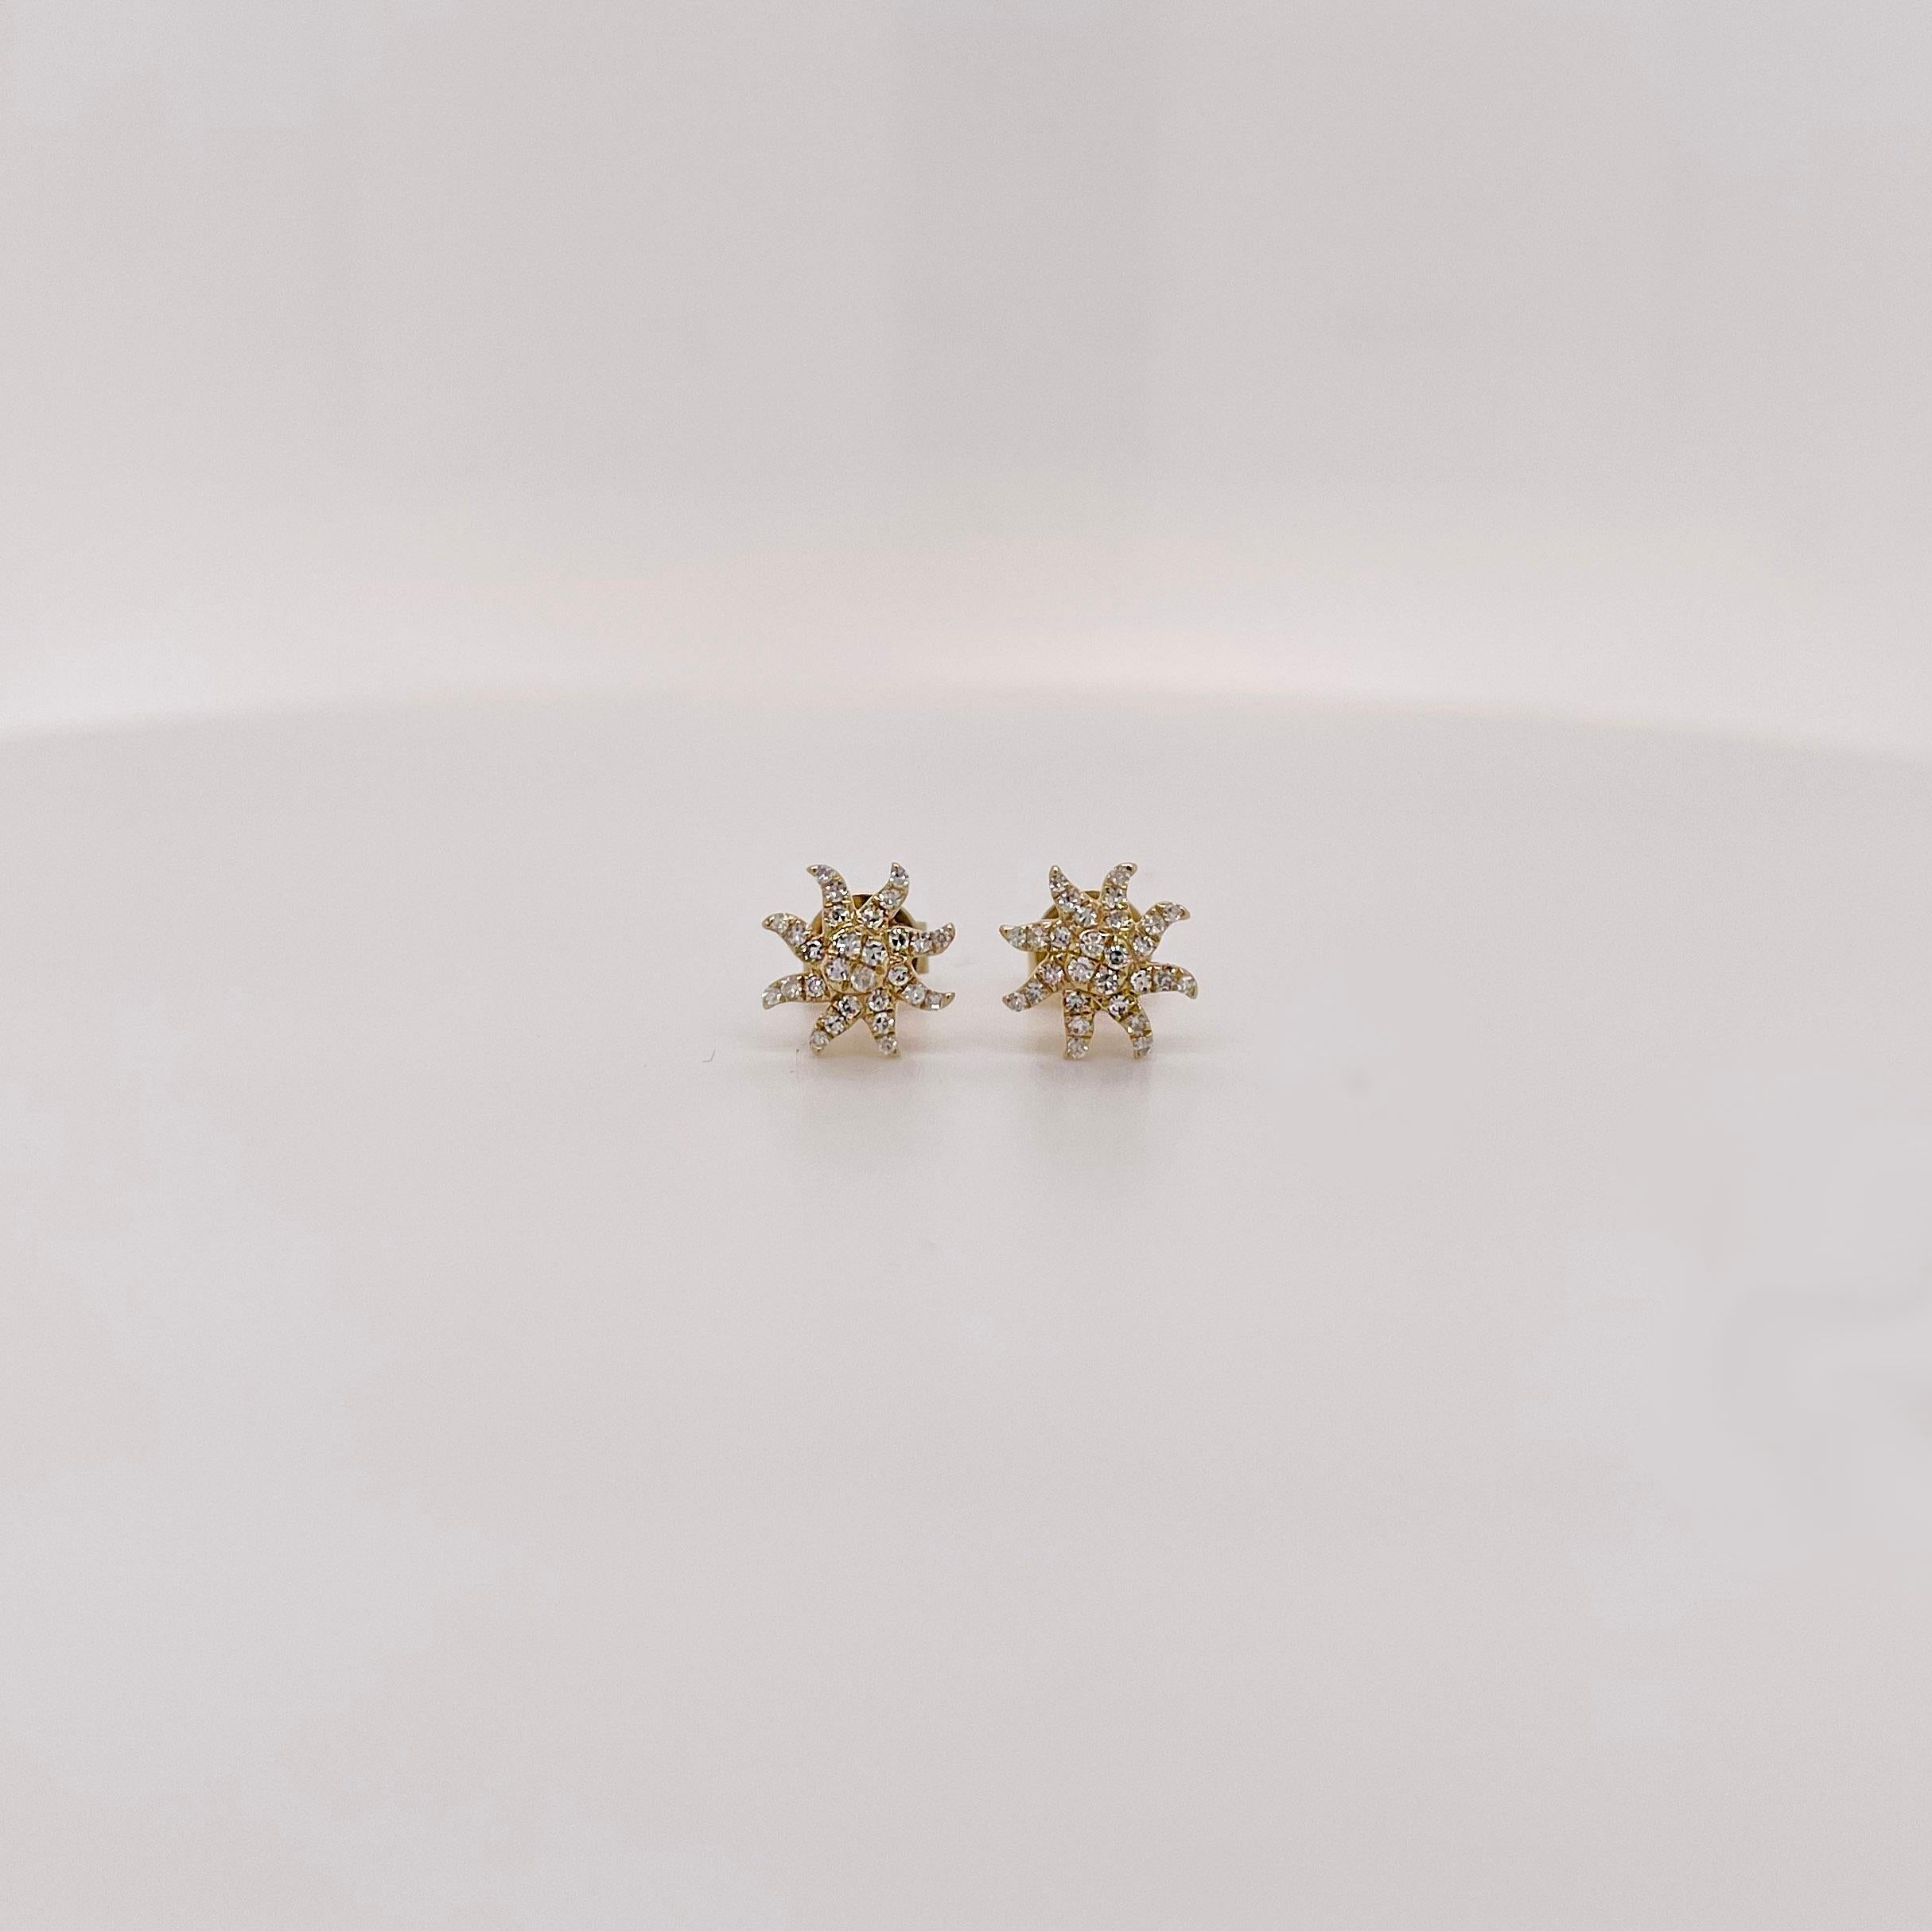 Vous cherchez une nouvelle paire de clous en diamant ? Ces clous de diamant en forme d'étoile sont l'ajout parfait à toute collection de bijoux fins ! Fabriqué avec des diamants naturels authentiques et de l'or jaune solide de 14 carats. Portez-les